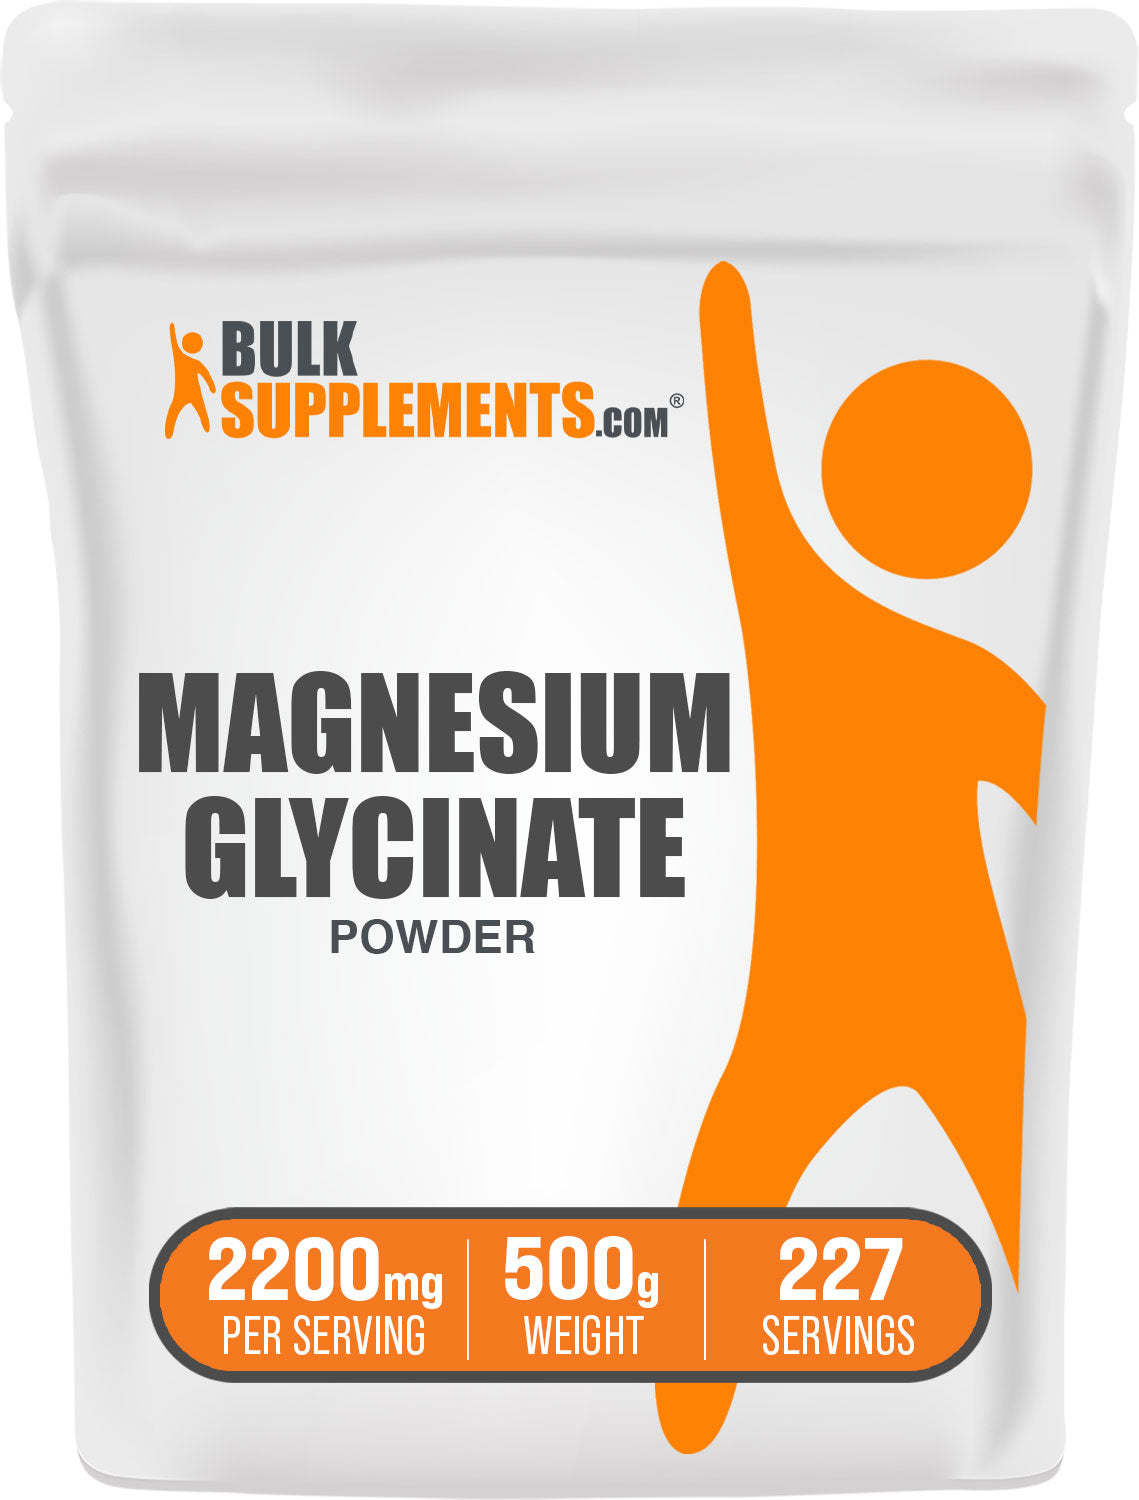 Magnesium glycinate pure magnesium glycinate 500g bag